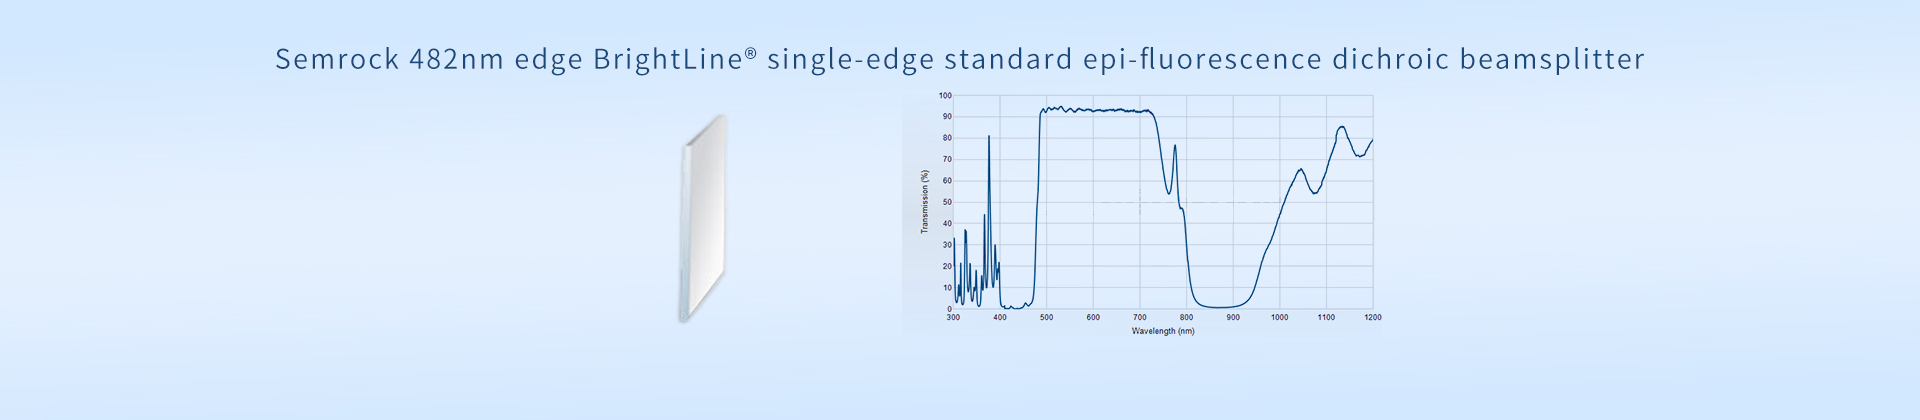 Semrock 482nm edge BrightLine® single-edge standard epi-fluorescence dichroic beamsplitter